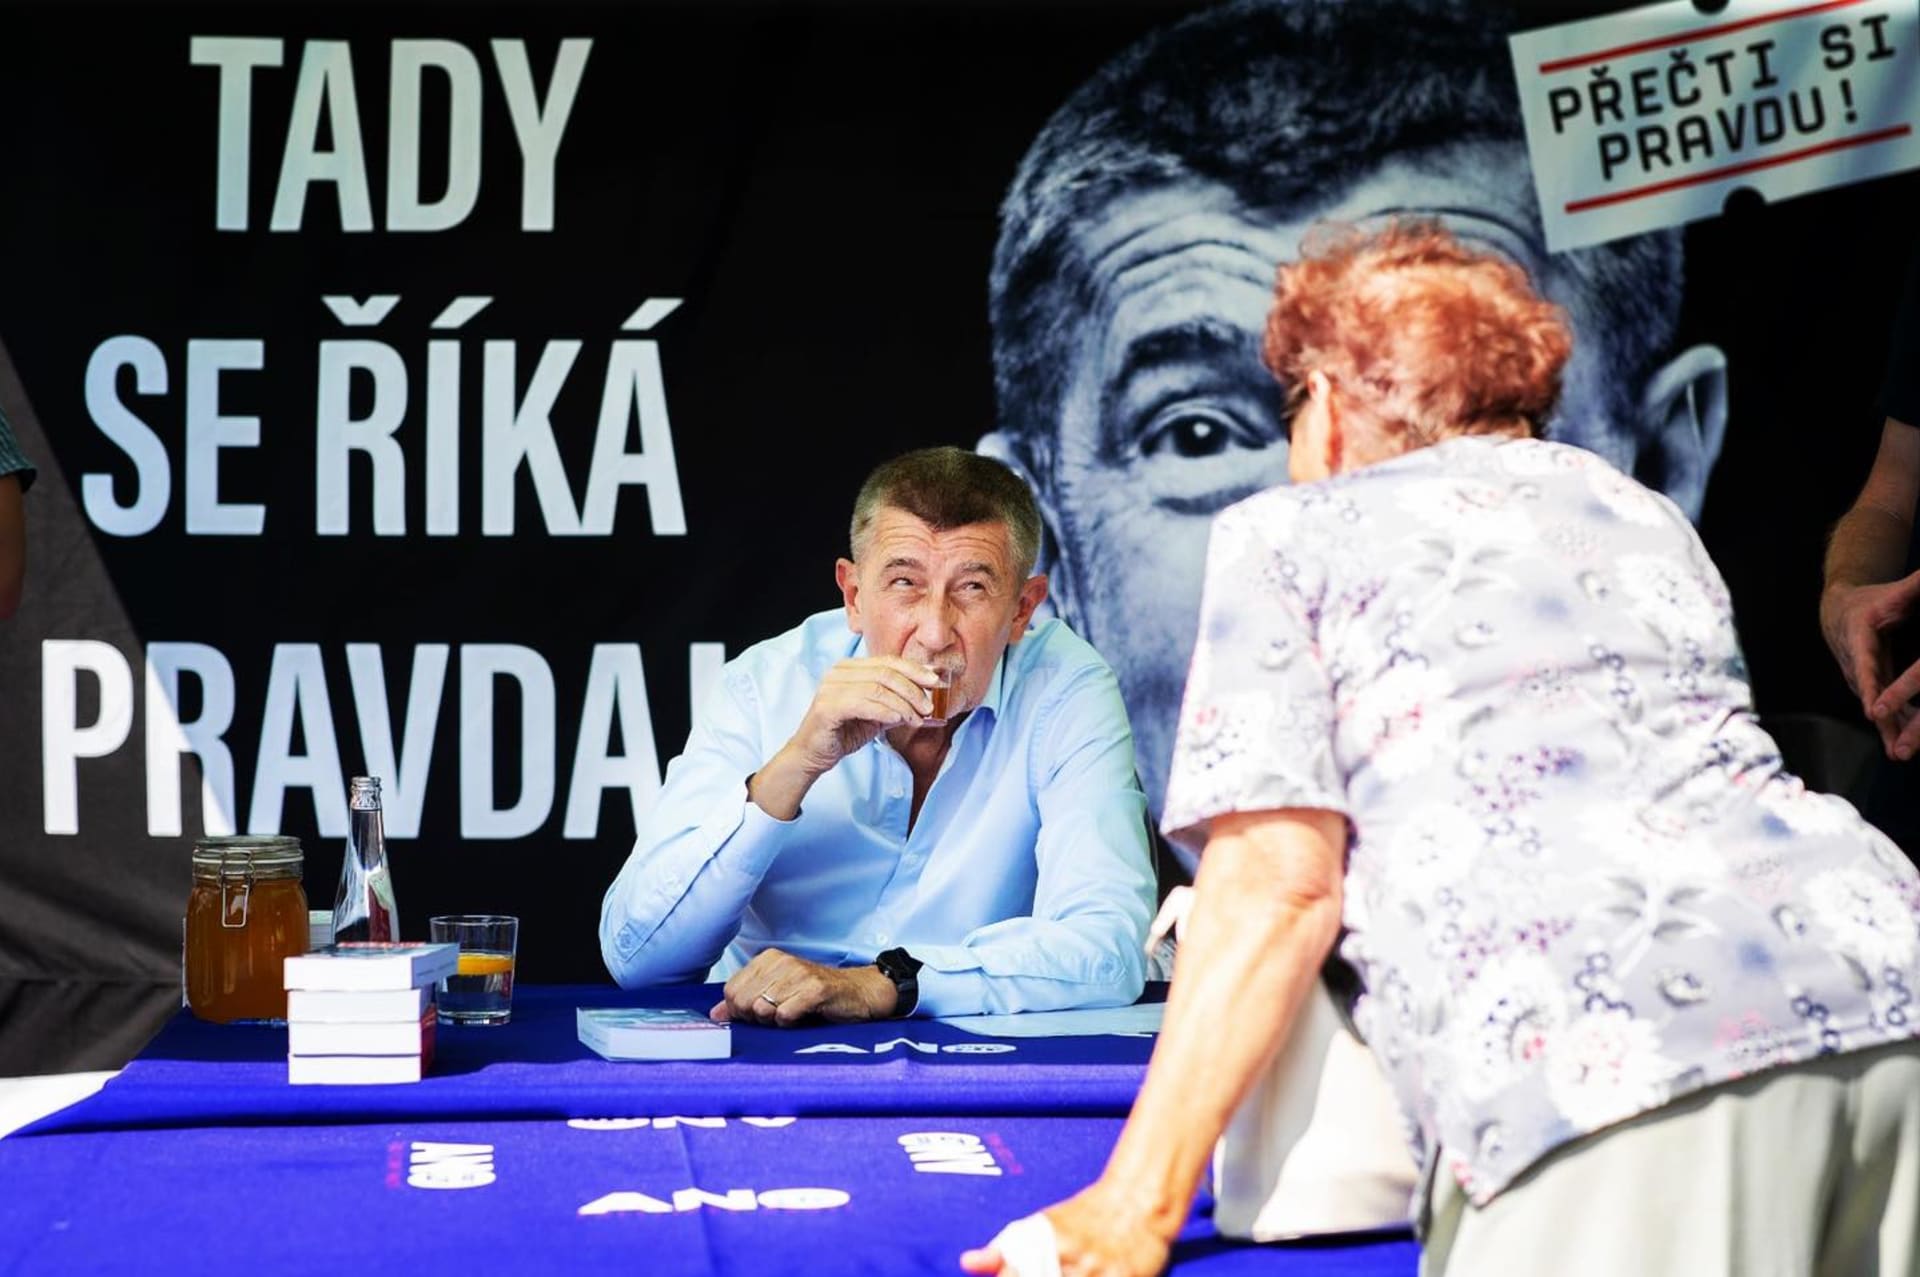 Premiér Andrej Babiš (ANO) při předvolební kampani objížděl o víkendu moravská města.